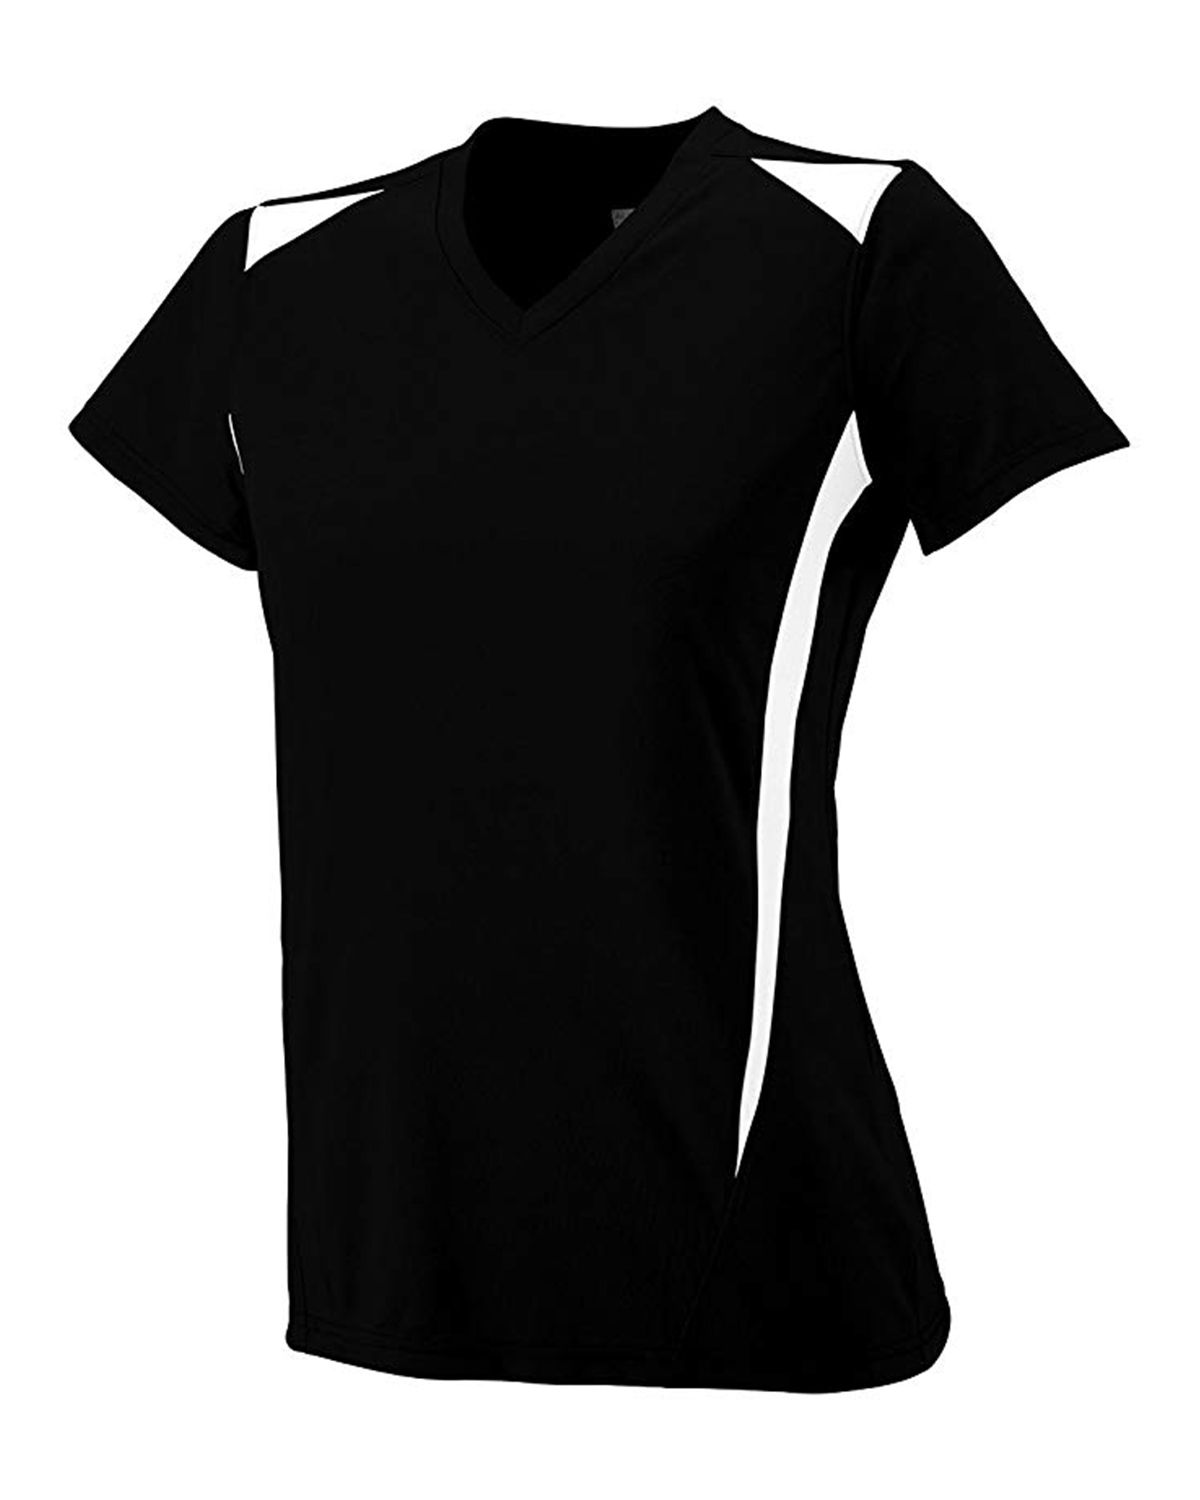 Augusta Sportswear 1055 Women's Premier Crew T-Shirt